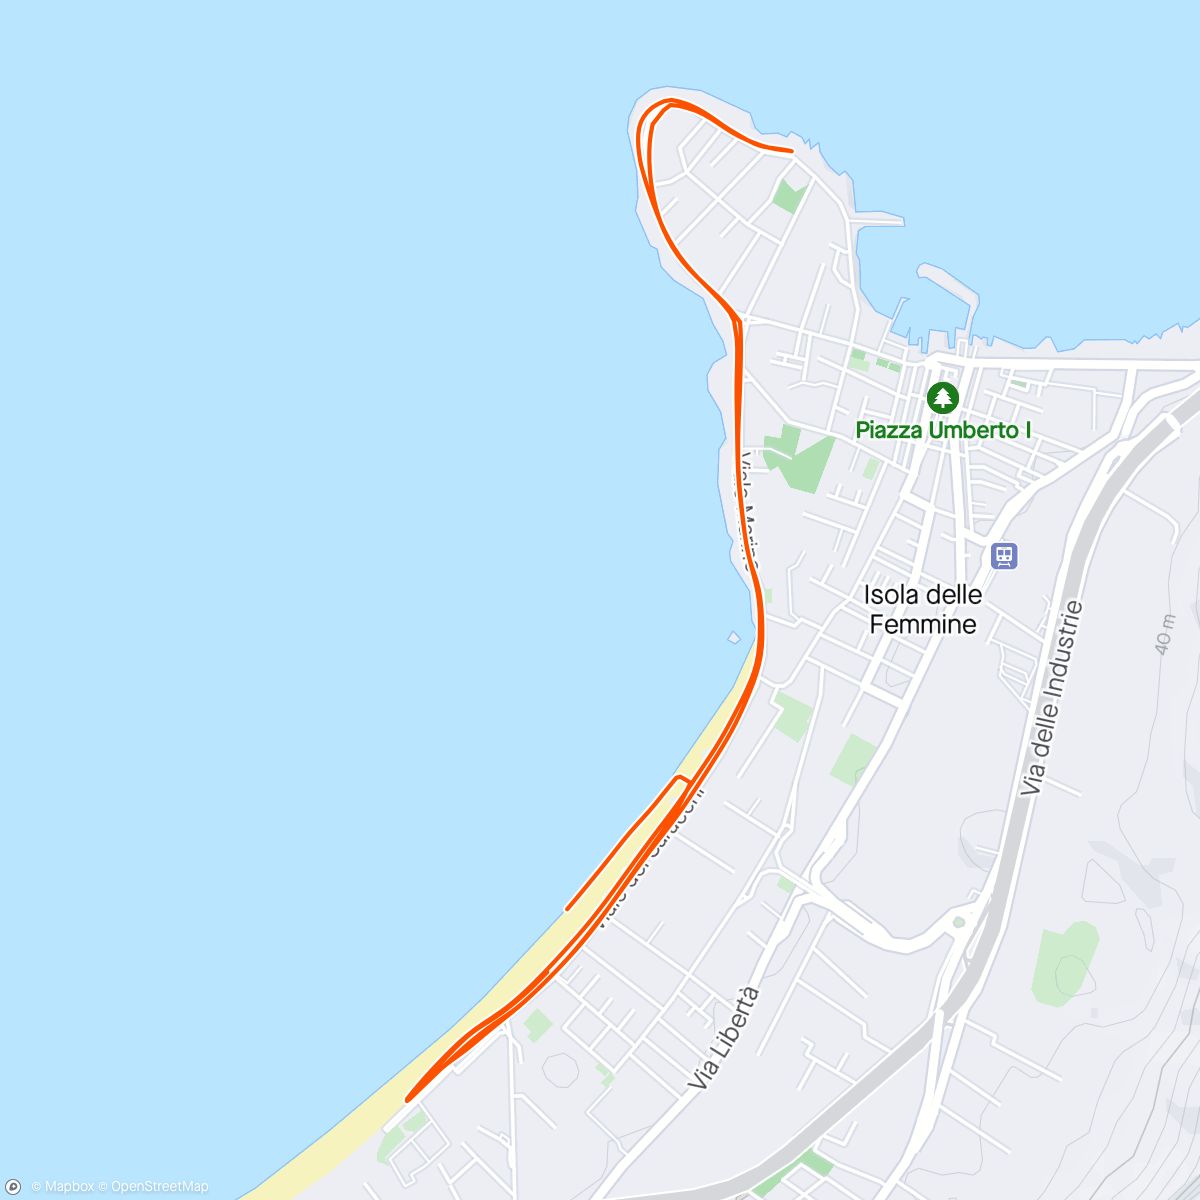 「Corsa in riva al mare」活動的地圖